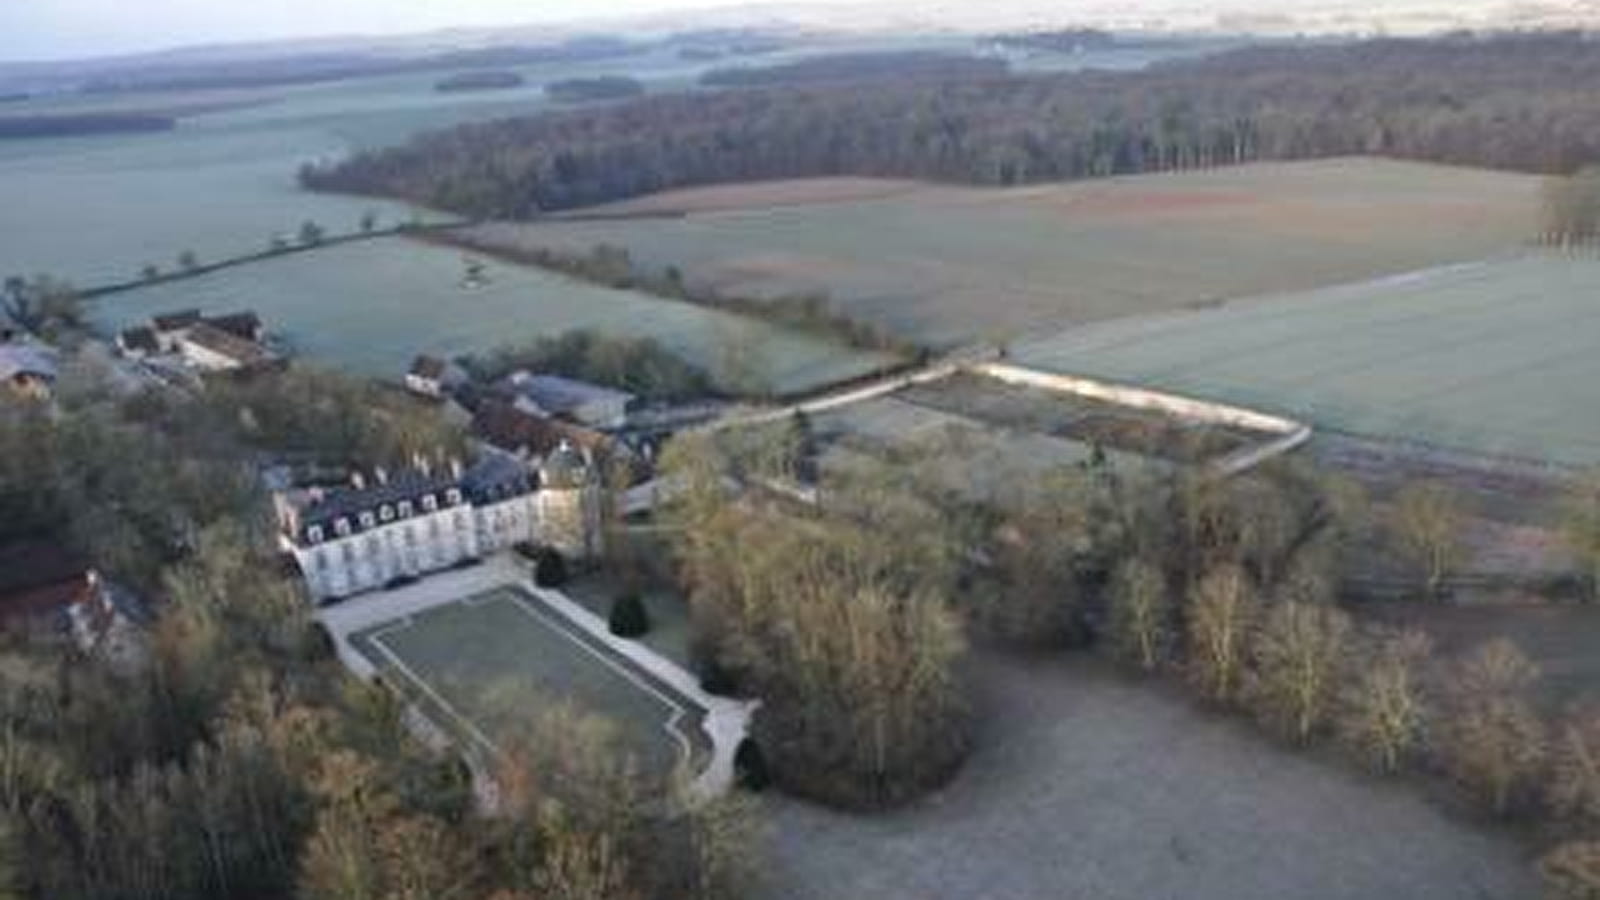 Château des Barres